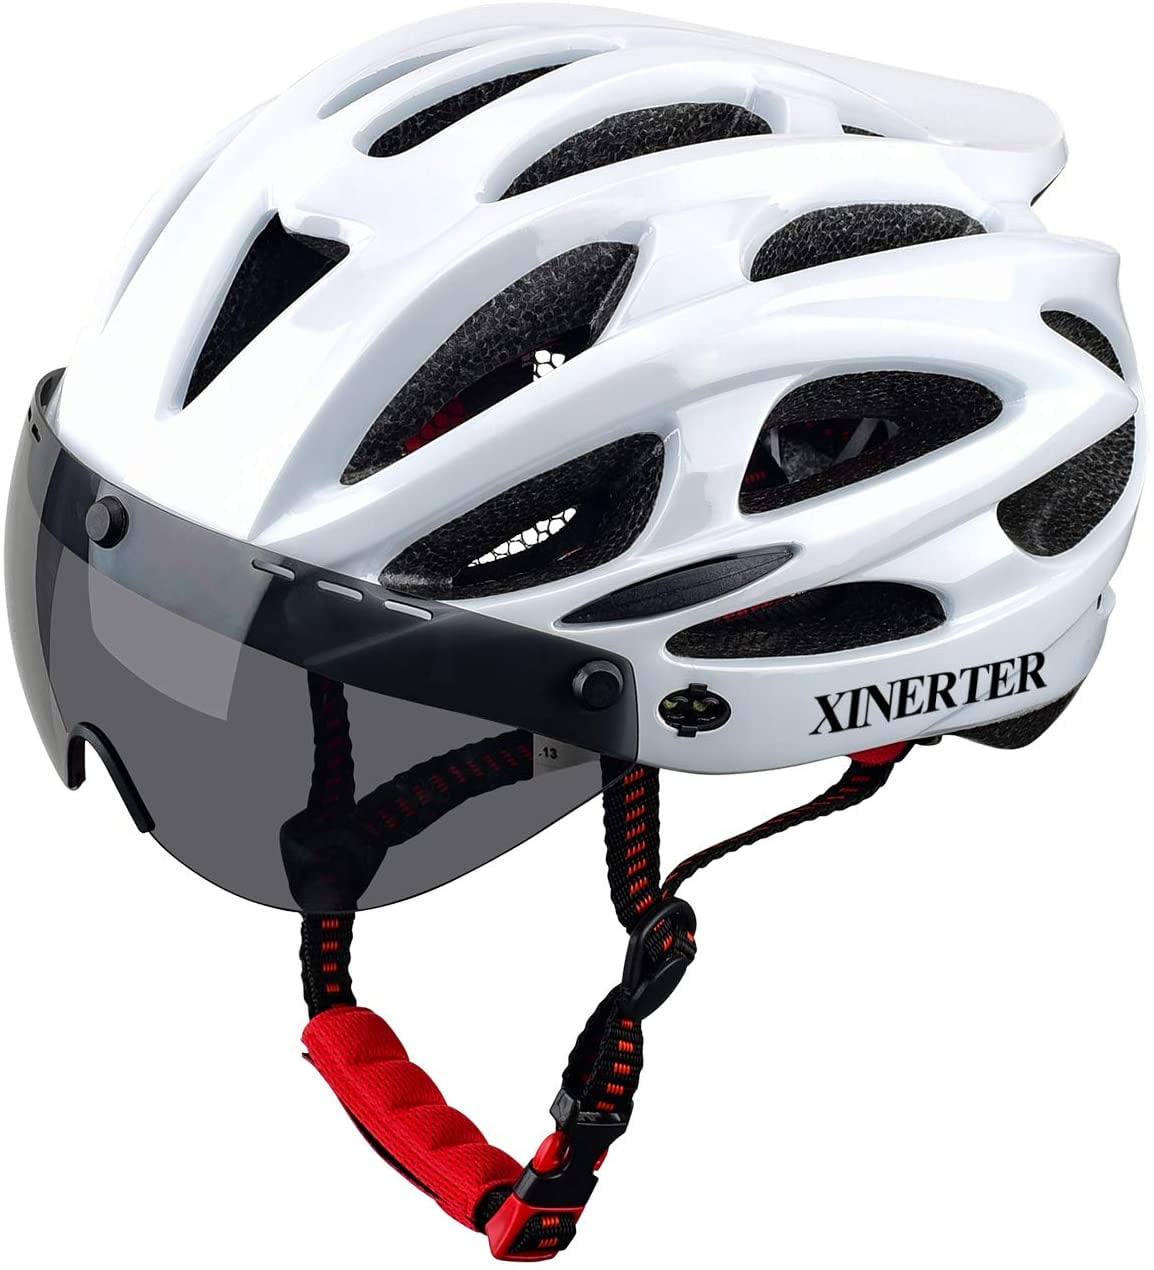 XINERTER Adult Bike Helmet Road Bike Helmet Detachable Goggles